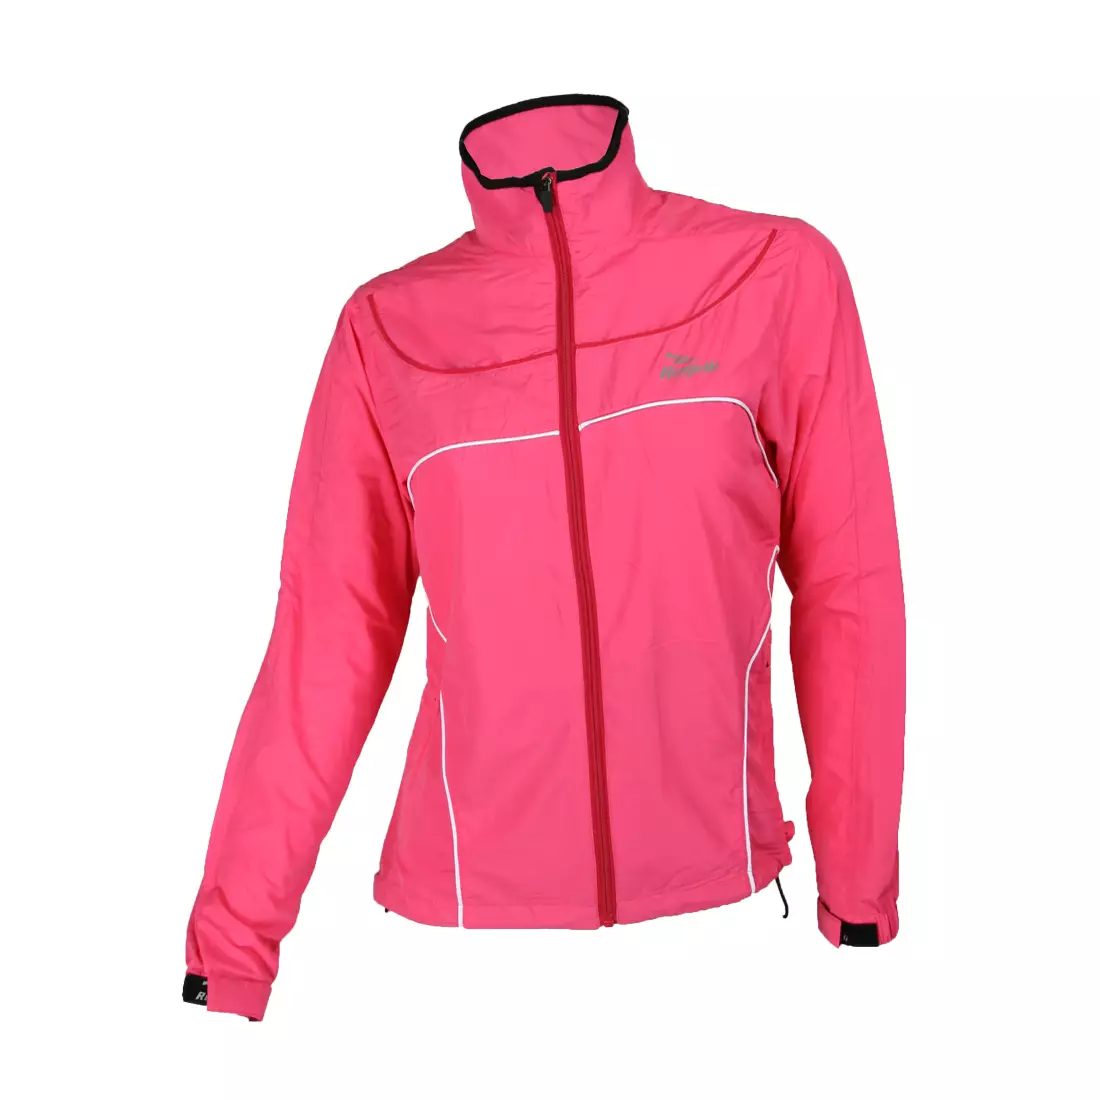 ROGELLI RUN - MADU - női széldzseki kabát, színe: Pink